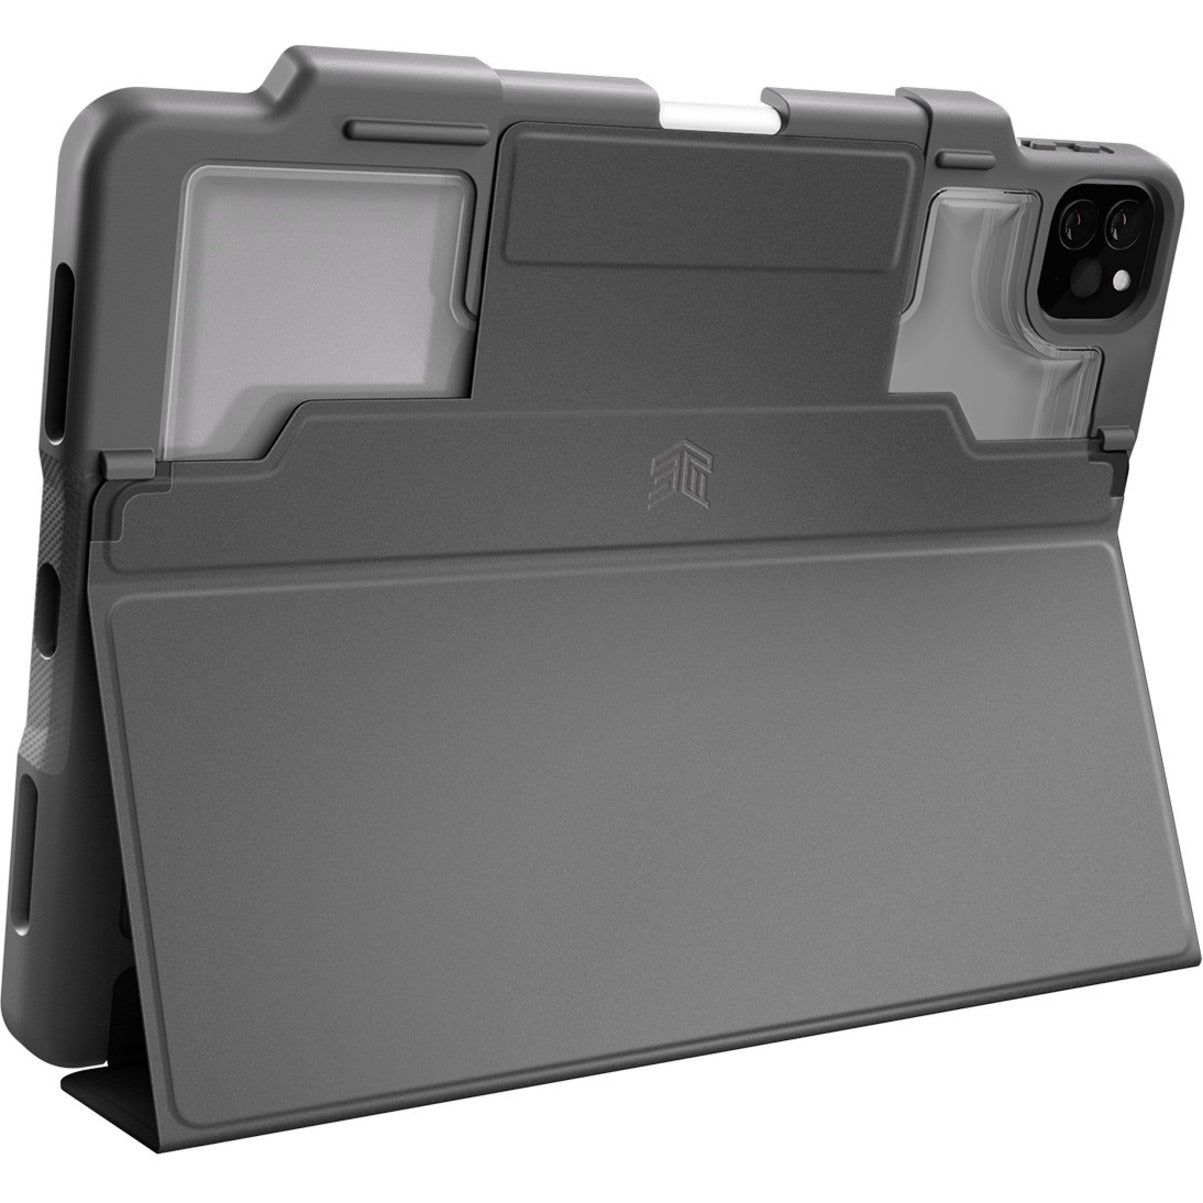 STM Goods STM-222-334KZ-01 DUX PLUS iPad Pro Models With Apple Pencil Storage (2021), Black, 11"